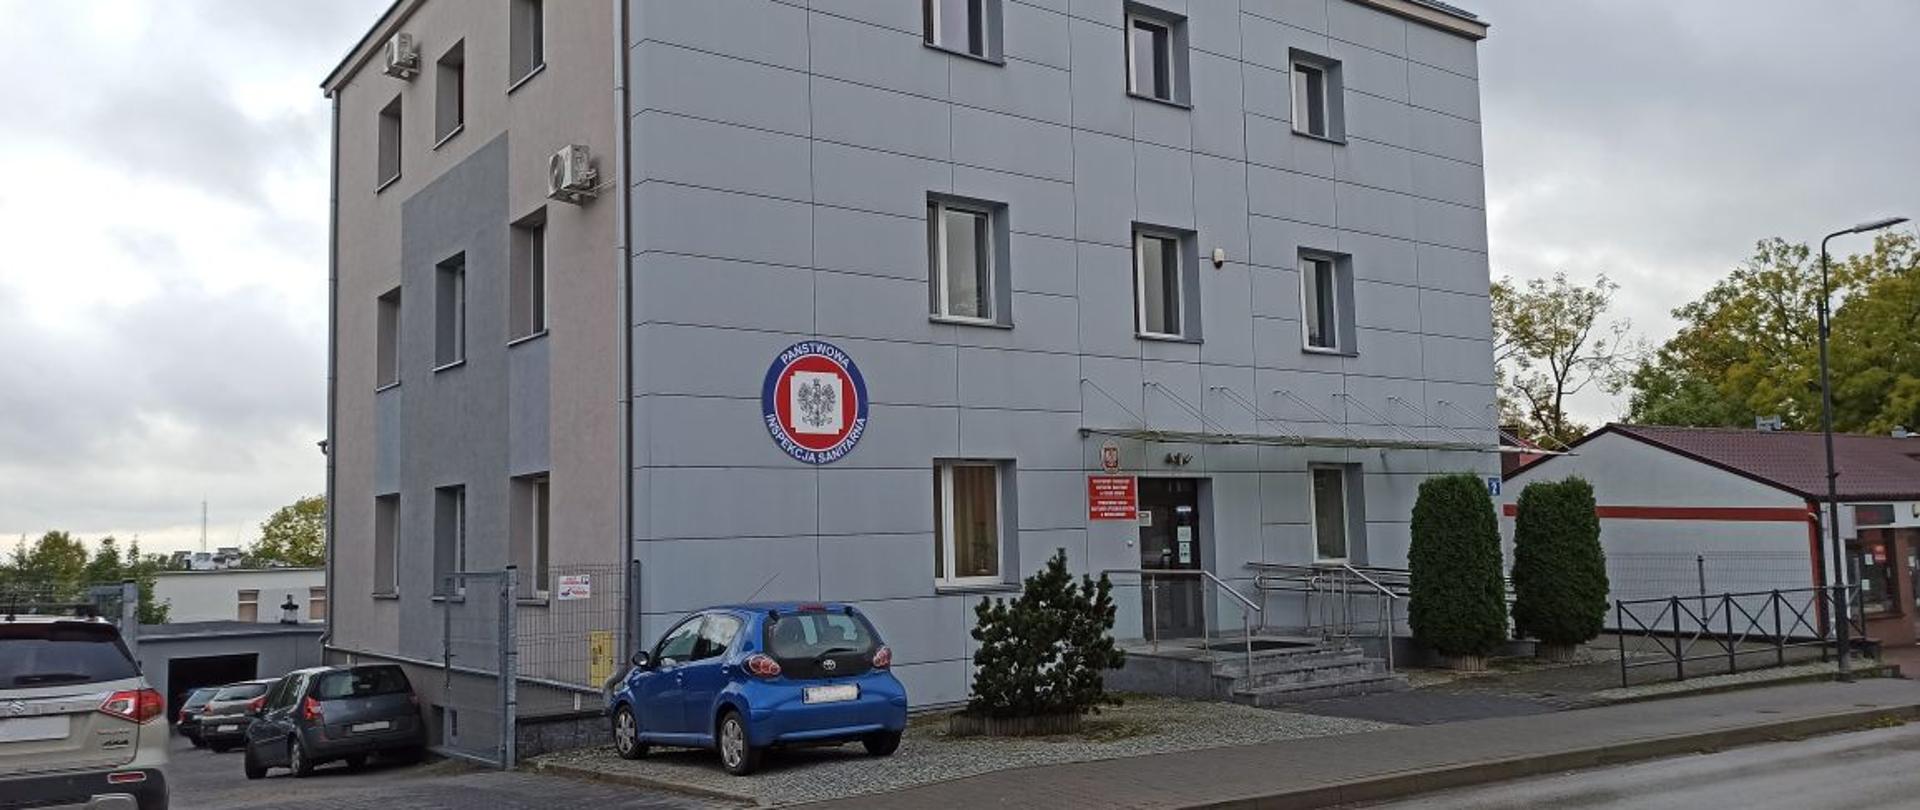 Powiatowa Stacja Sanitarno-Epidemiologiczna w Busku-Zdroju